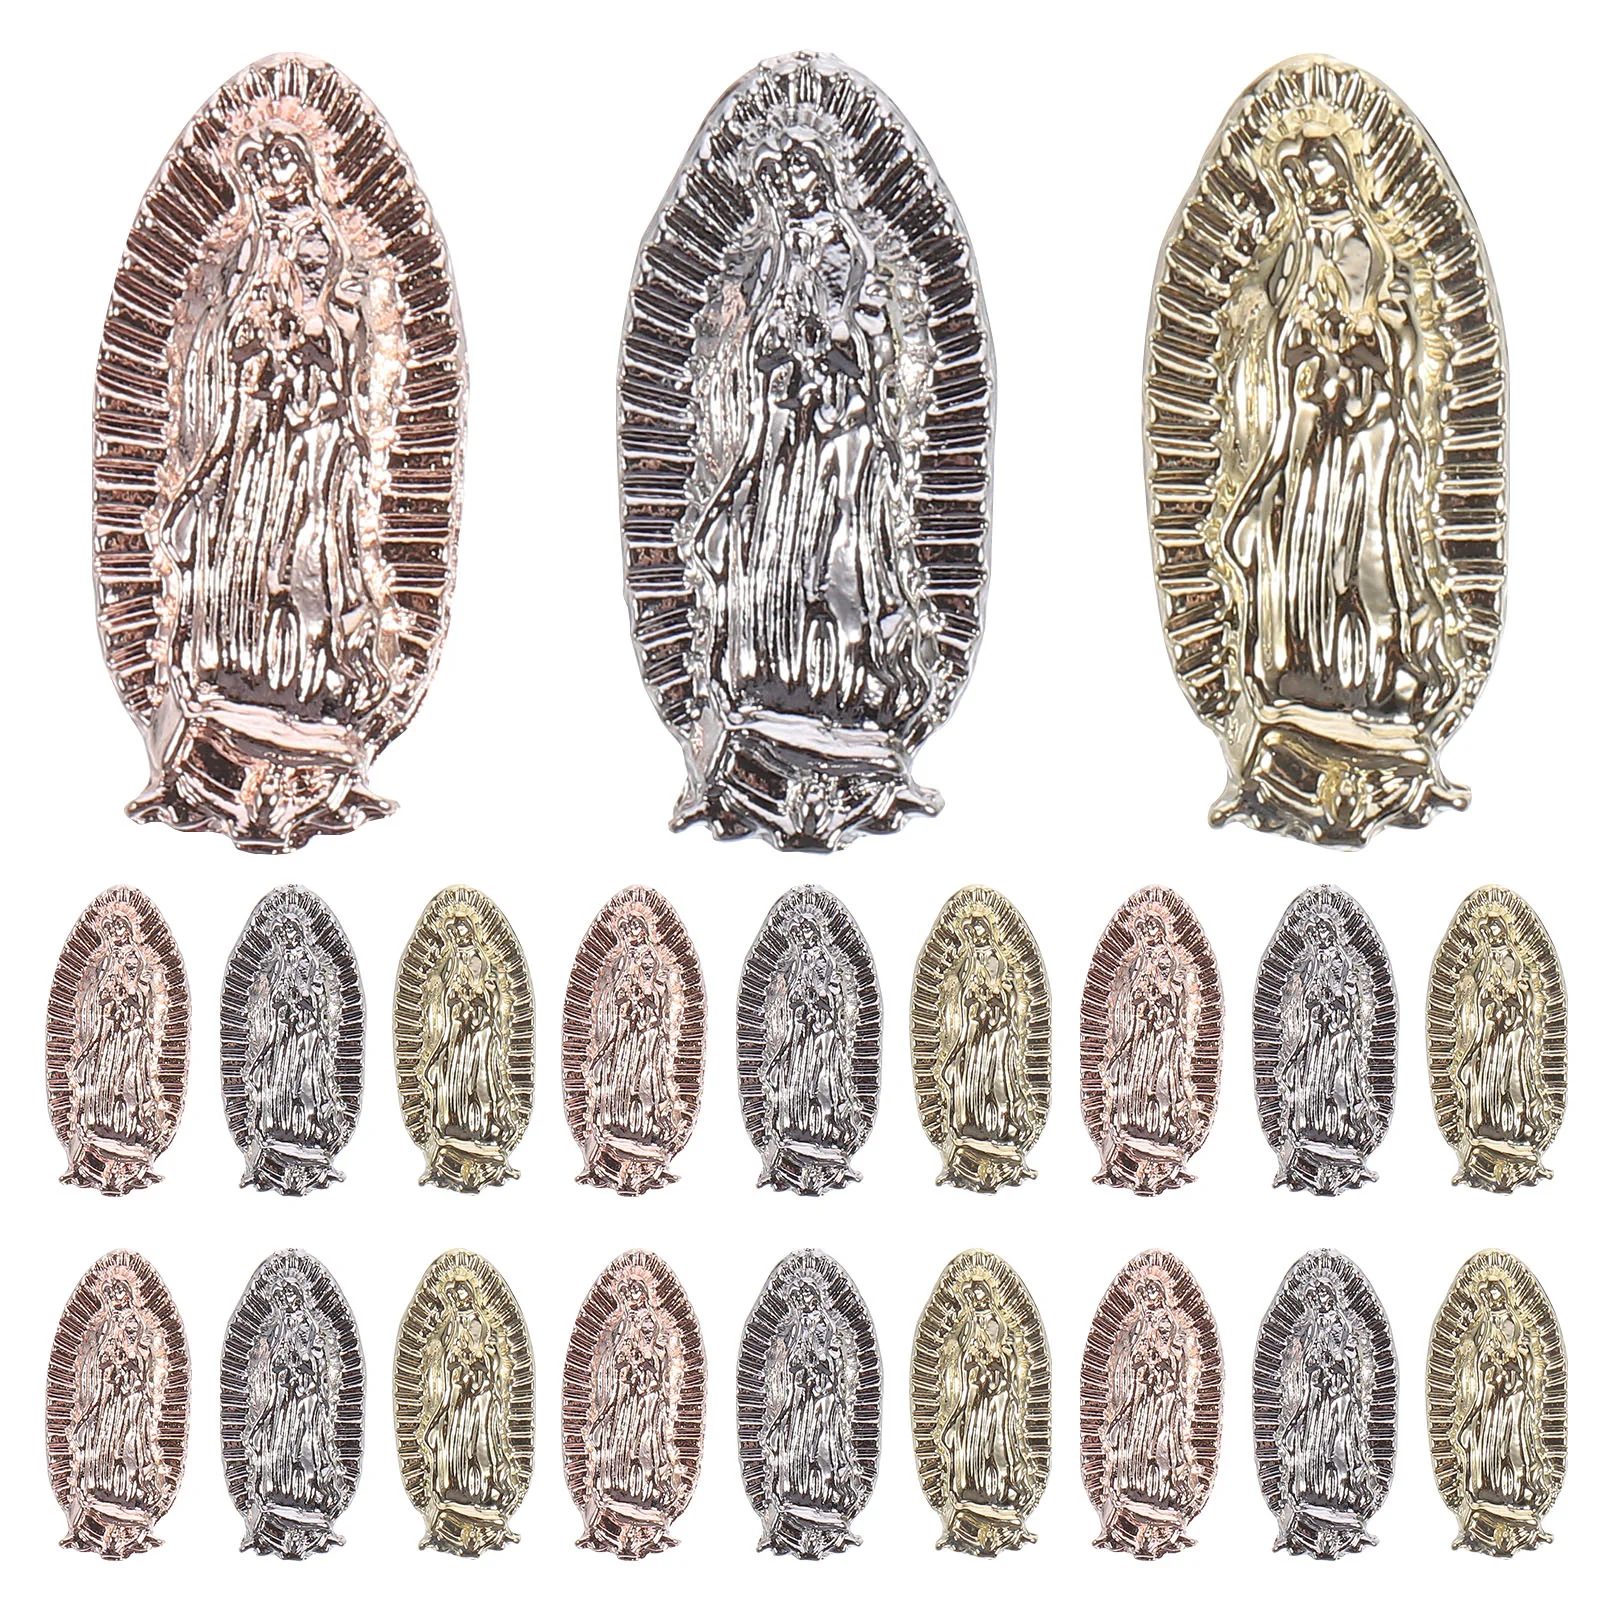 20шт Подвесок для ногтей, Декоративные Подвески Девы Марии, Украшения для ногтей, принадлежности для ногтей